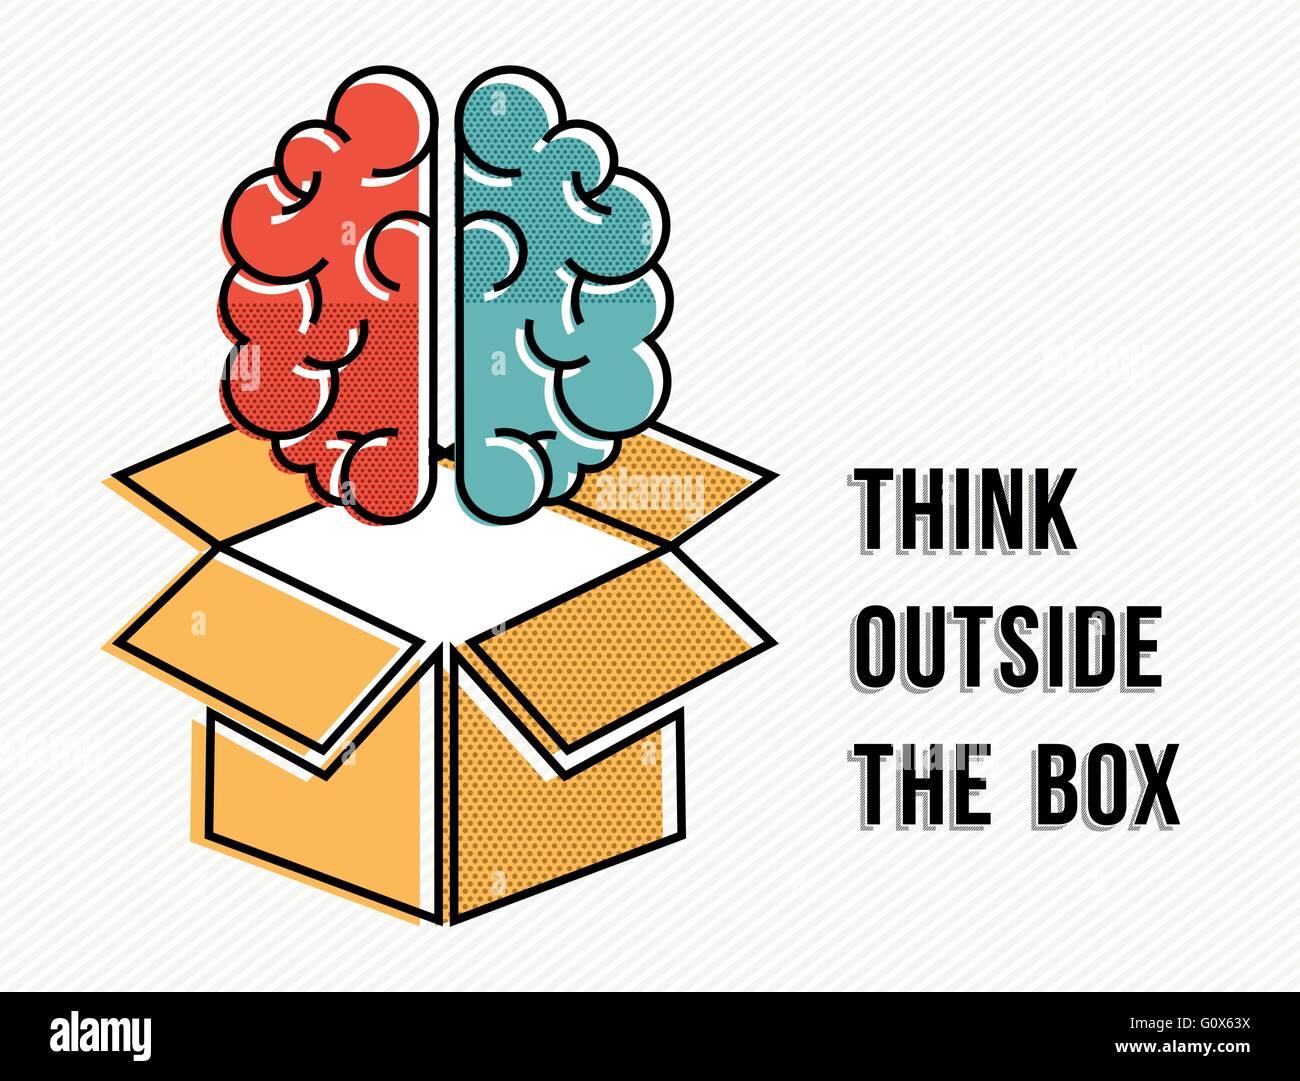 Penser en dehors de la boîte concept créatif avec illustration du cerveau humain en ligne moderne de style art. Vecteur EPS10. Illustration de Vecteur